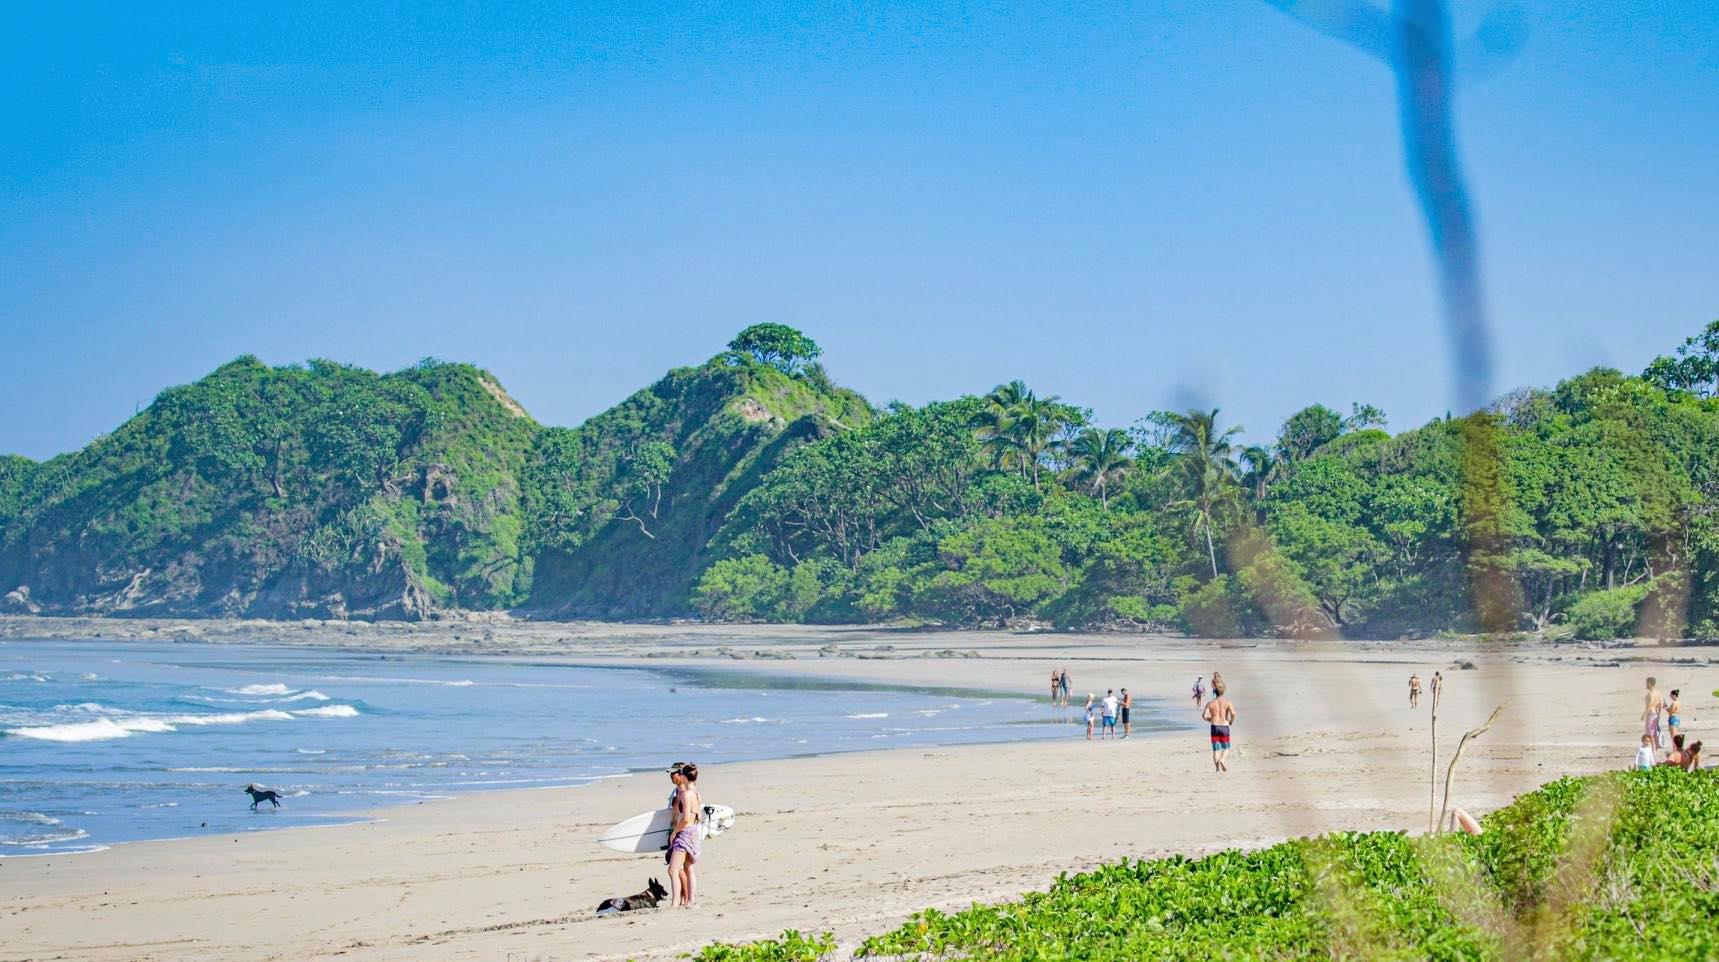 “Salud no puede tardar más de un mes en flexibilizar restricciones”: sector turismo de Costa Rica